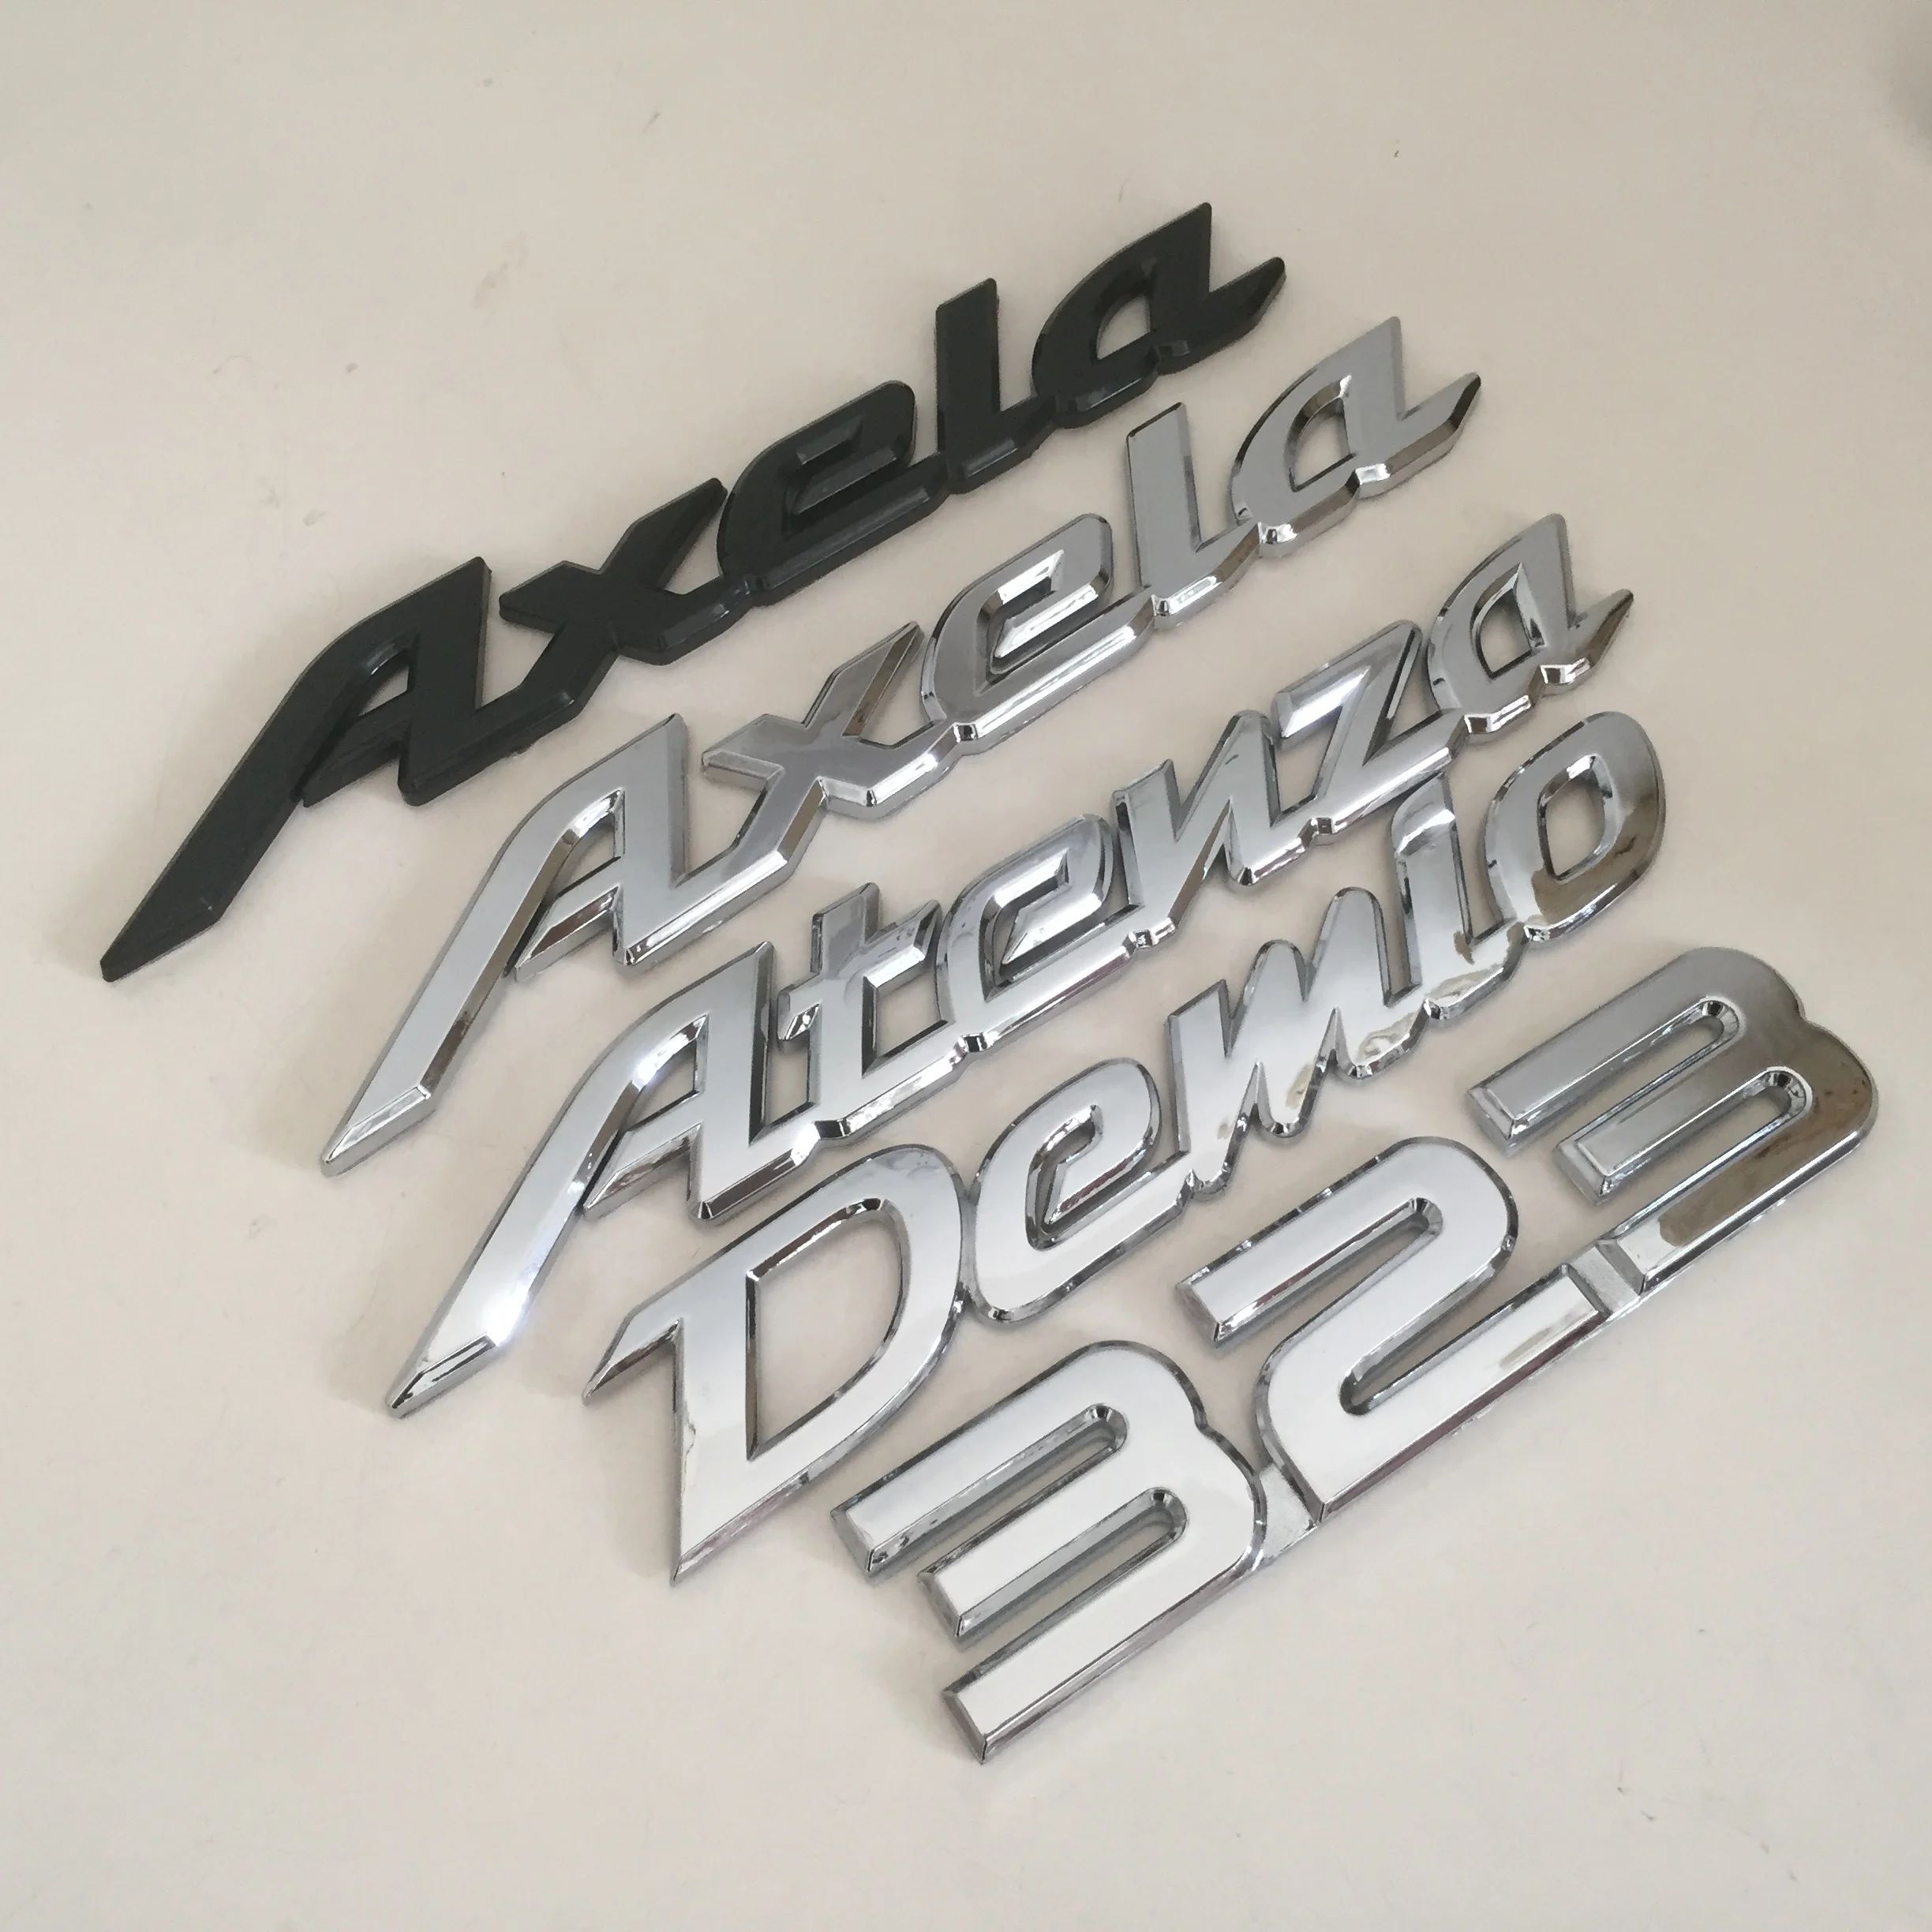 1 шт. Demio Axela Atenza 323 Автомобильный задний багажник stylin ABS бампер письмо эмблема